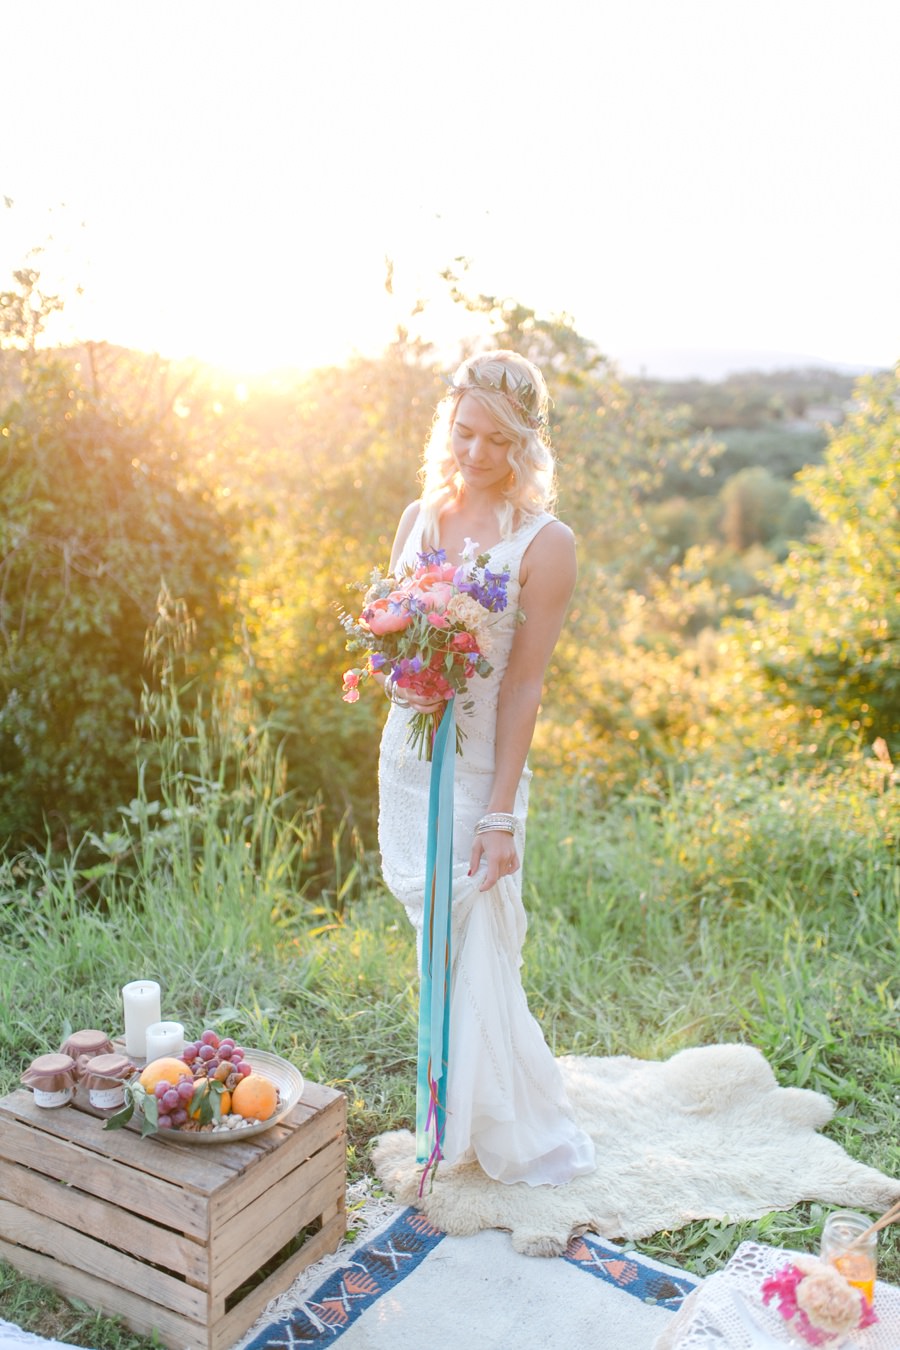 Heiraten in der Toskana | Hochzeit Toskana | Hochzeitsfotograf Toskana Stefanie Reindl Photography | Wedding photographer Stefanie Reindl Photography